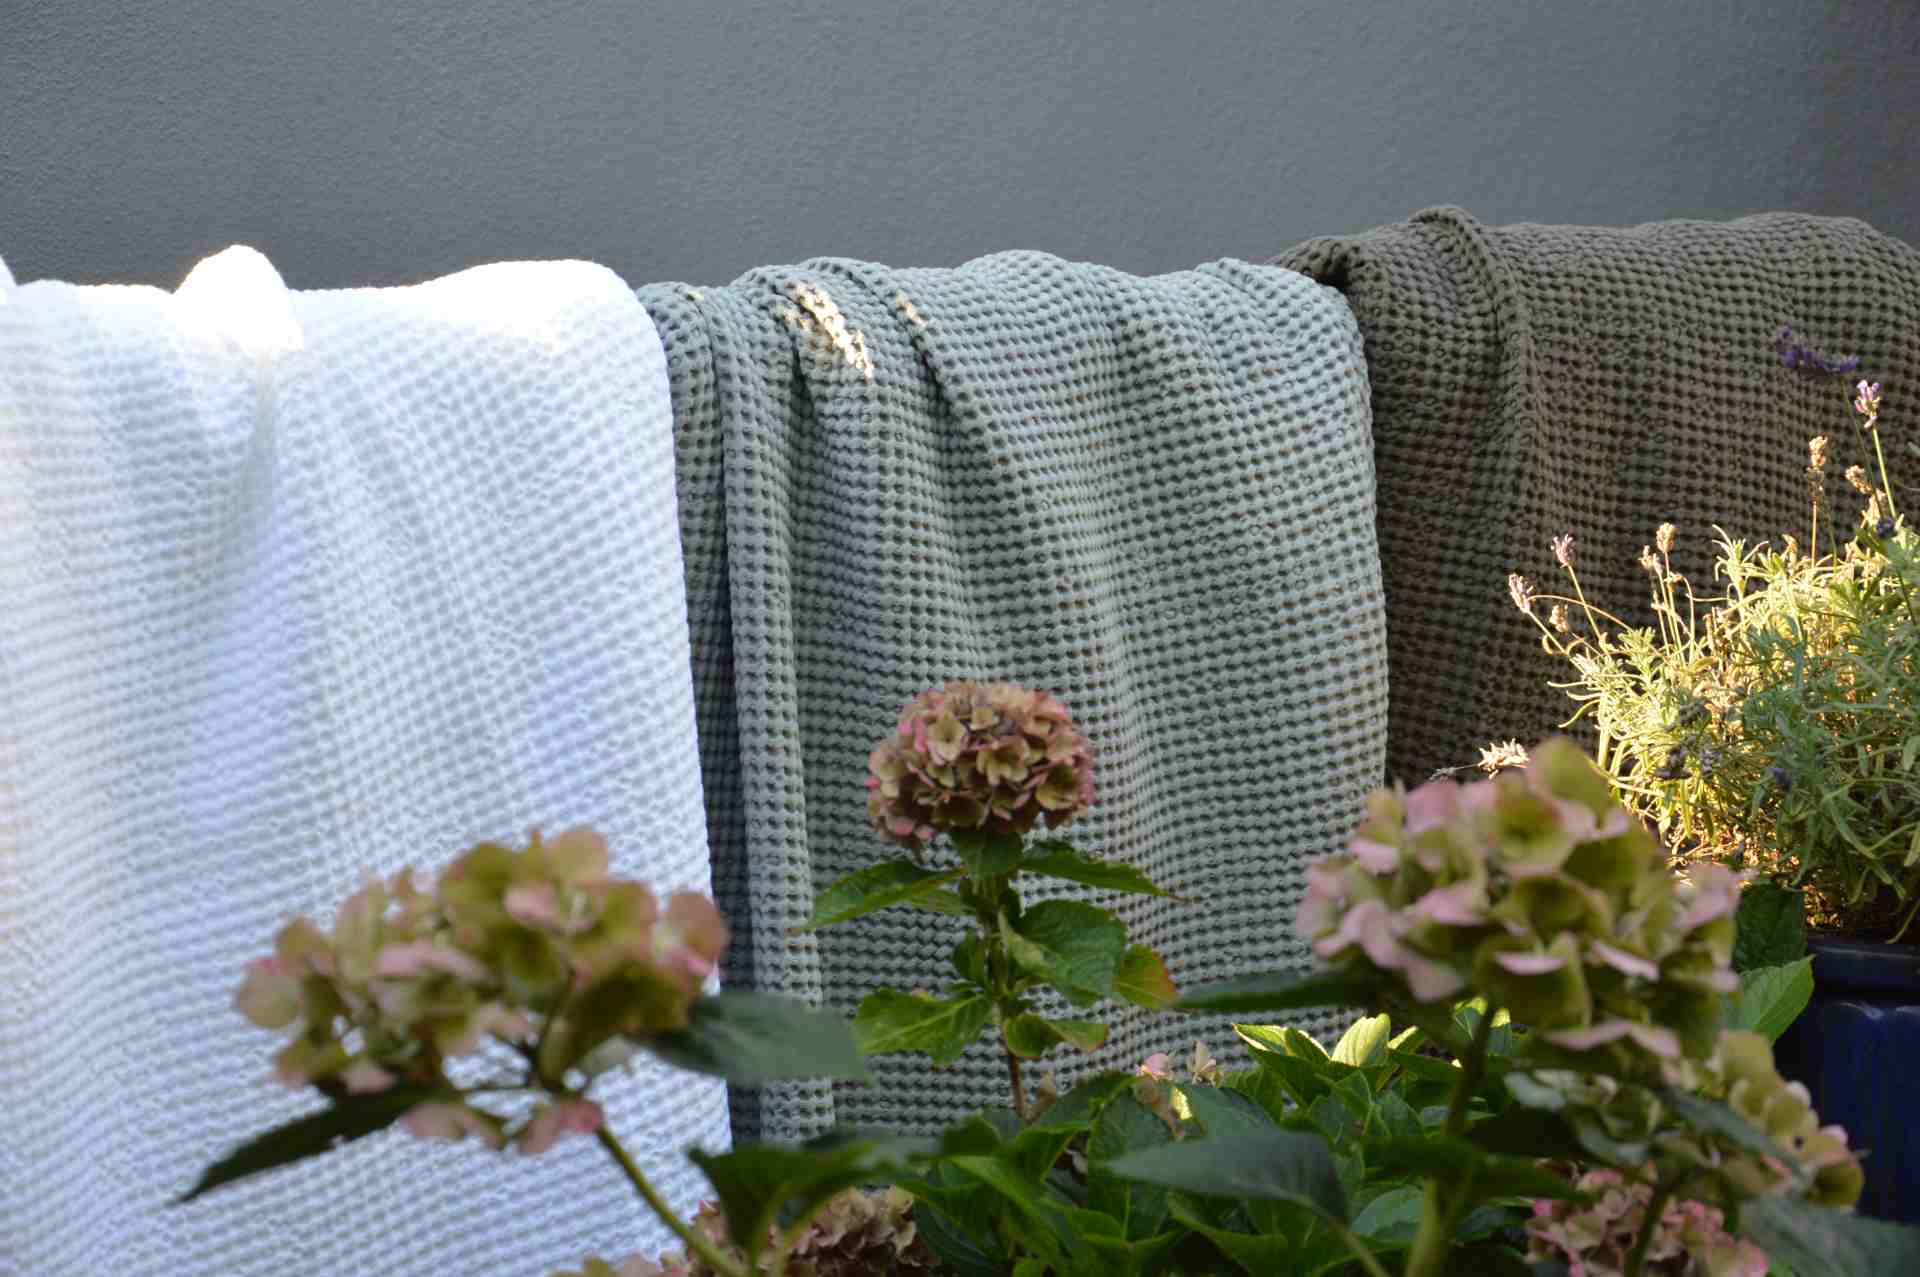 Die bequeme Decke Alba wurde aus hundert Prozent Bauwolle gefertigt. Designet wurde sie von der Marke Jan Kurtz. Sie ist perfekt geeignet für schöne Sommerabende im Garten. Die Farbe der Decke ist Weiß.